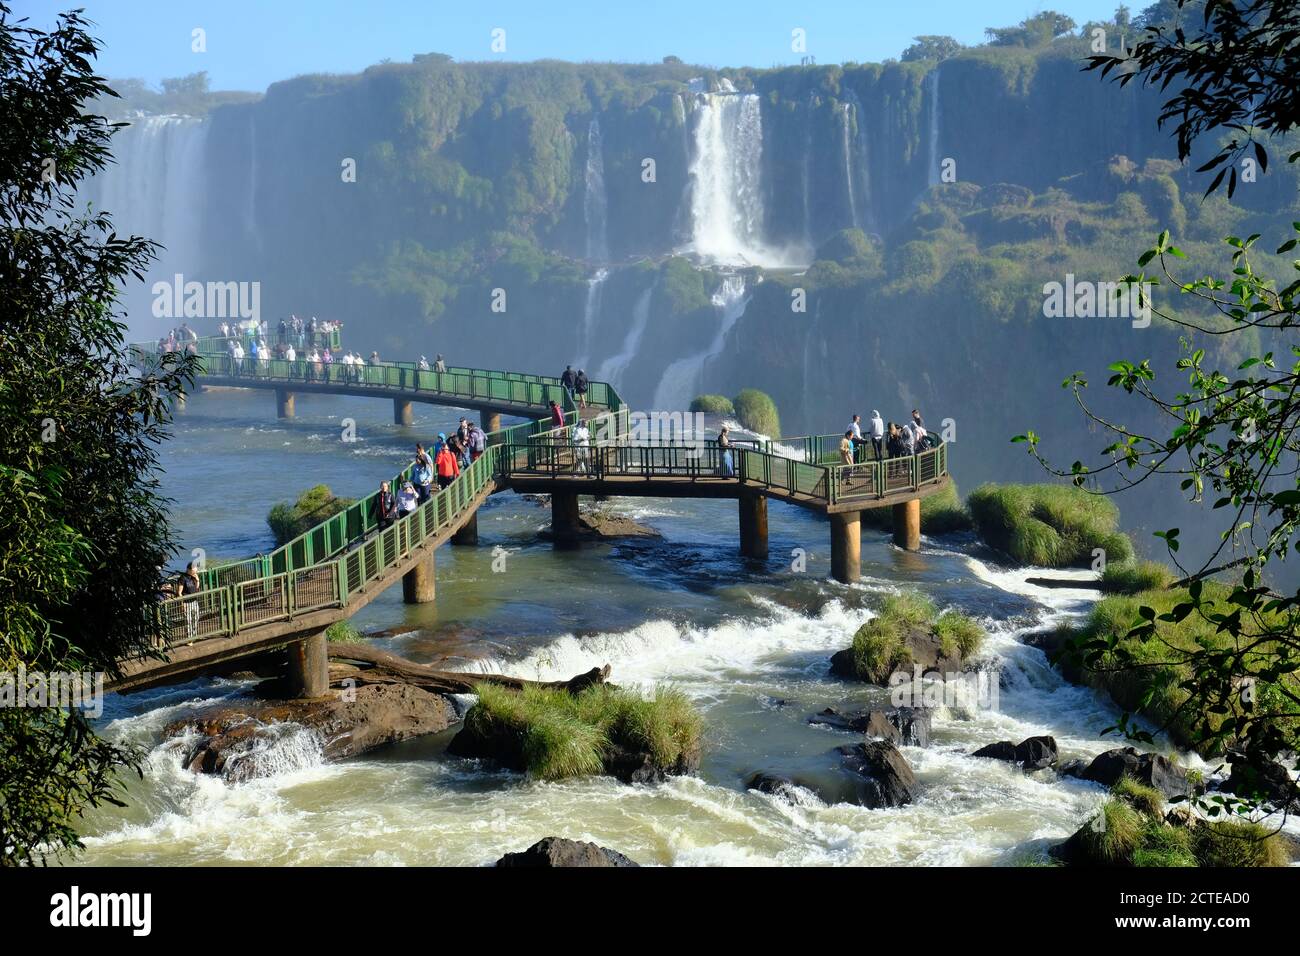 Brasil Foz do Iguacu - Cataratas del Iguazú - las Cataratas Puente de  observación del Iguazú Fotografía de stock - Alamy